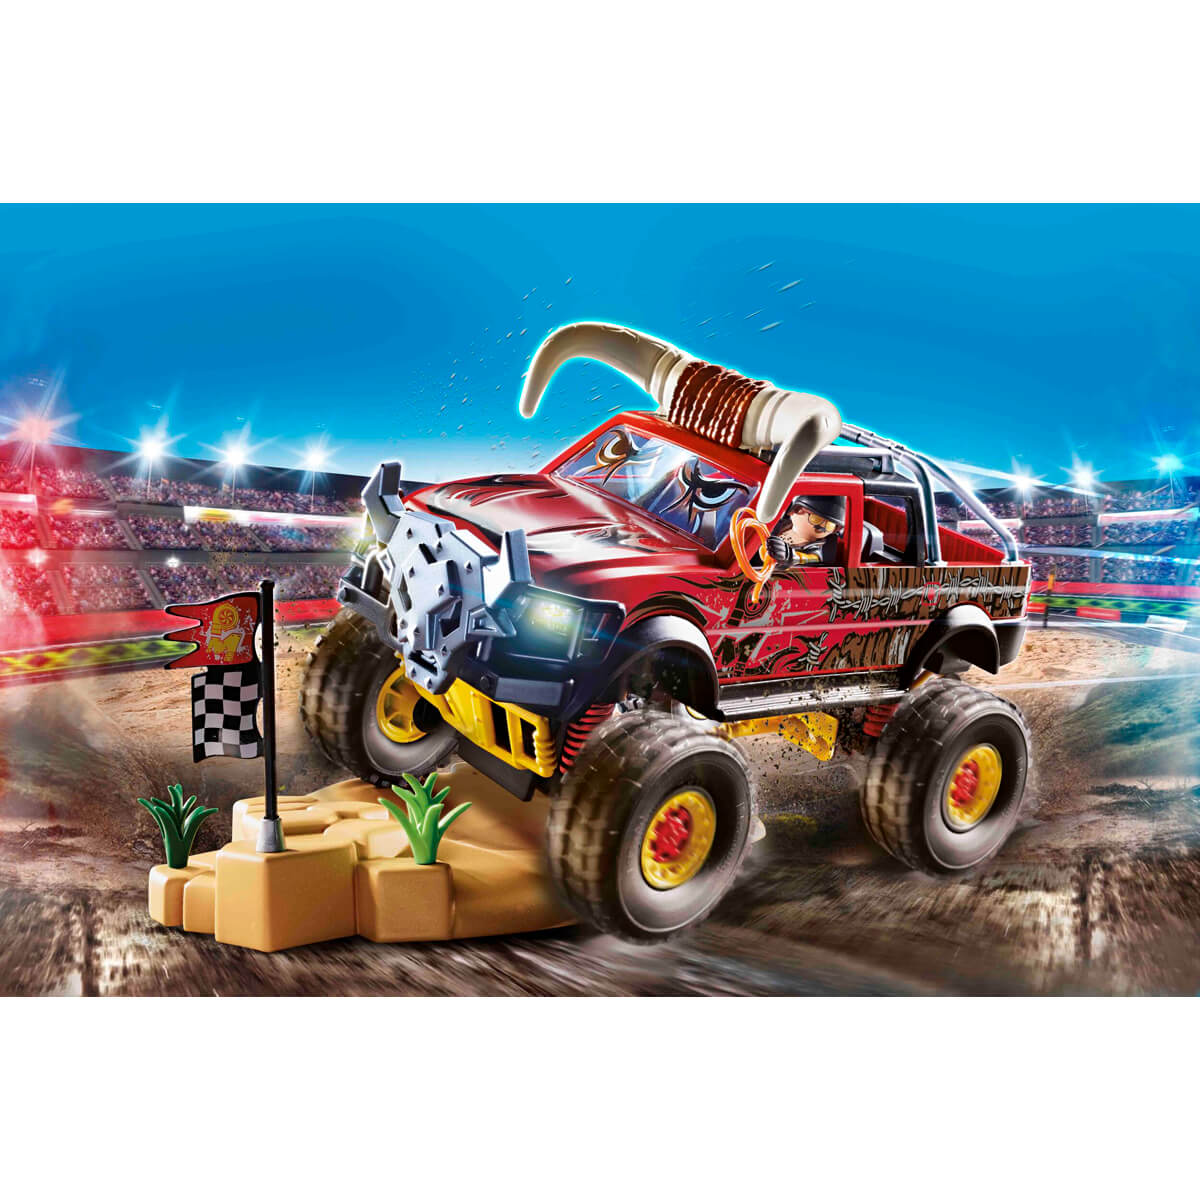 ΠΑΙΔΙ | Παιχνίδια | PLAYMOBIL | STUNT SHOW (ΑΓΟΡΙΑ 4-10 ΕΤΩΝ) Monster Truck Κόκκινος Ταύρος